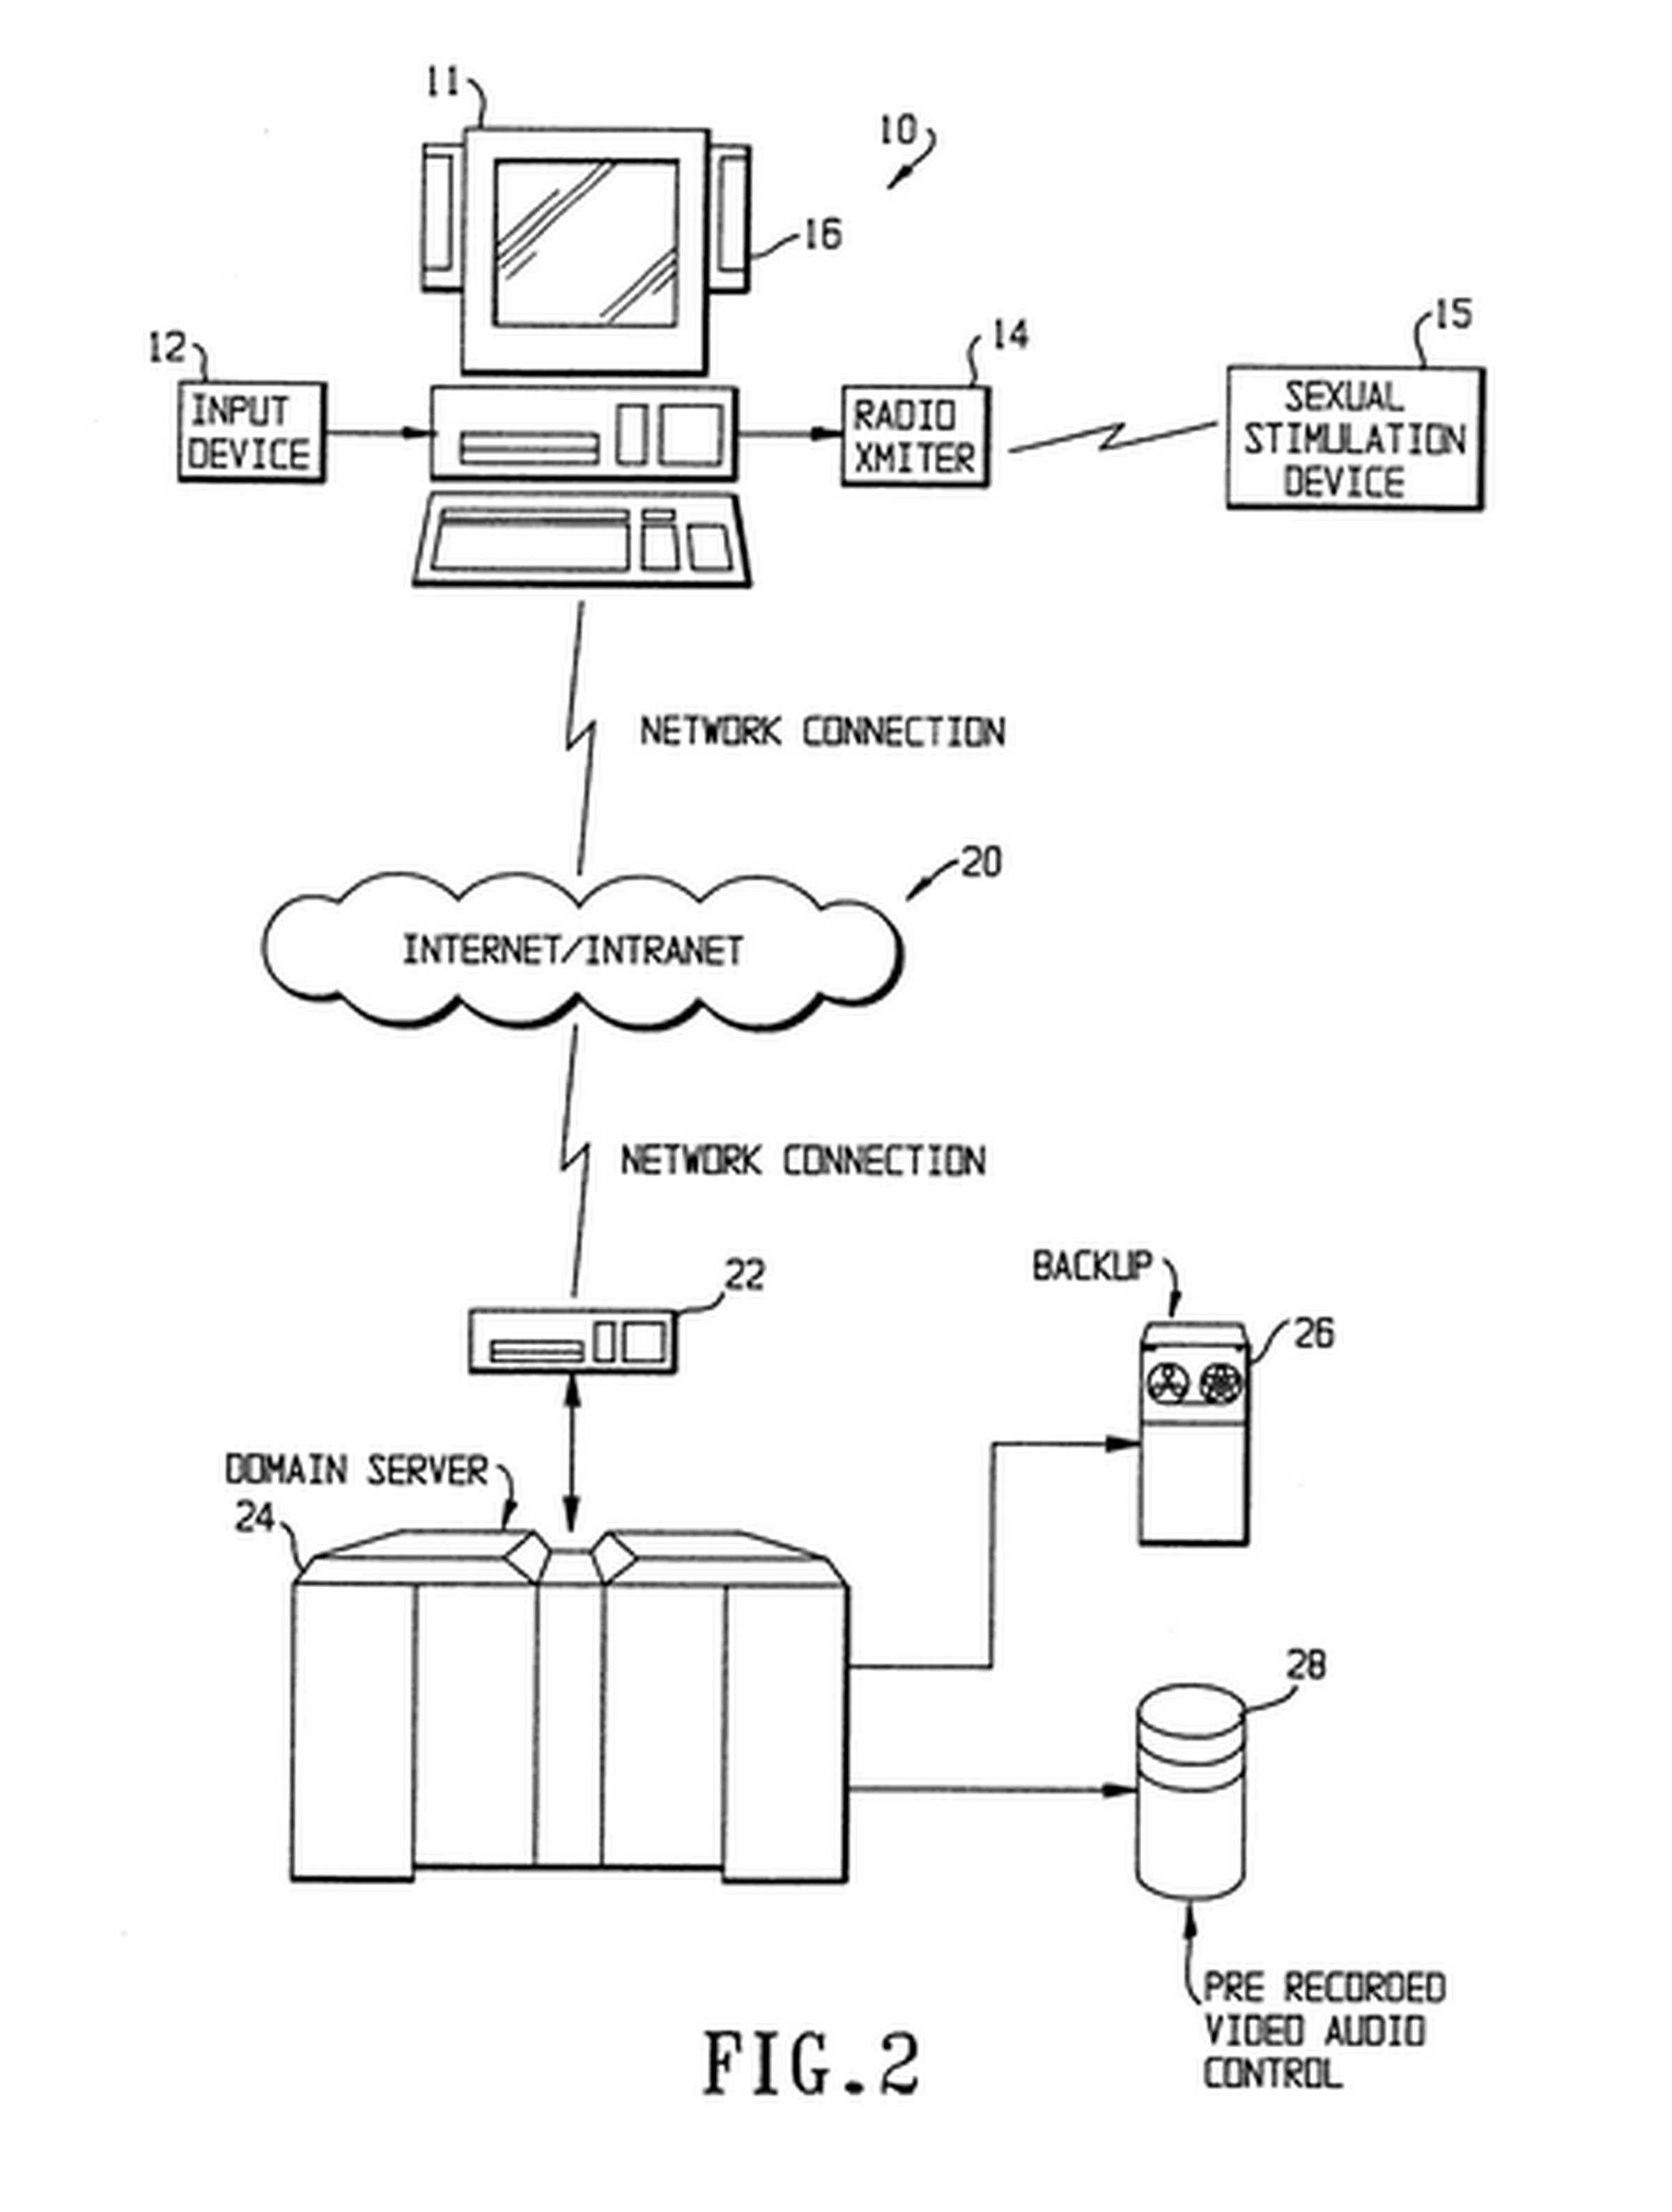 patent diagram 2